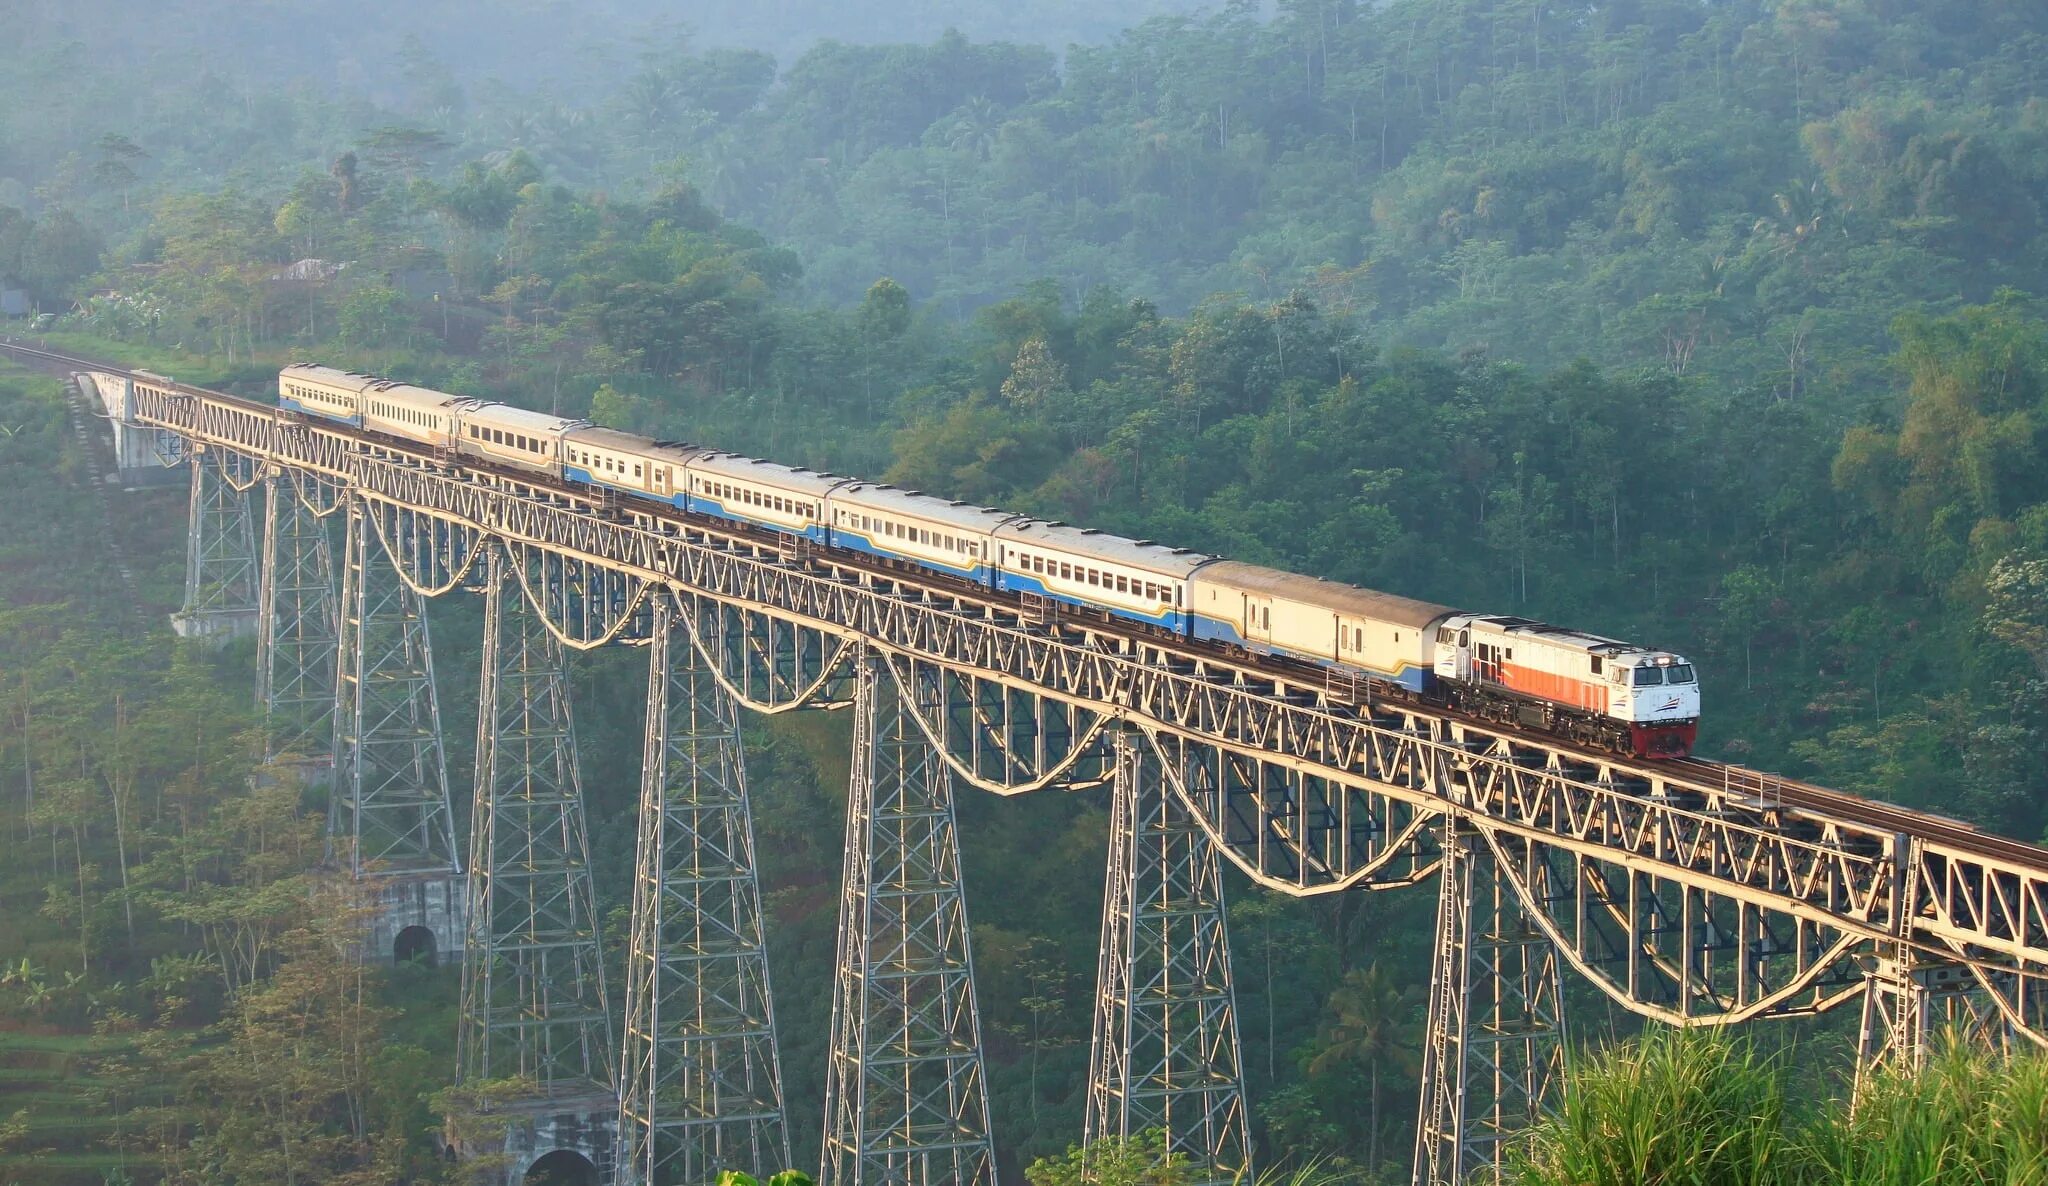 Argo Gede Train Railroad Индонезия. Железная дорога Арго Геде - Индонезия. Тайско-бирманская железная дорога. Железная дорога Амара в Бразилии. Железные дороги были в странах